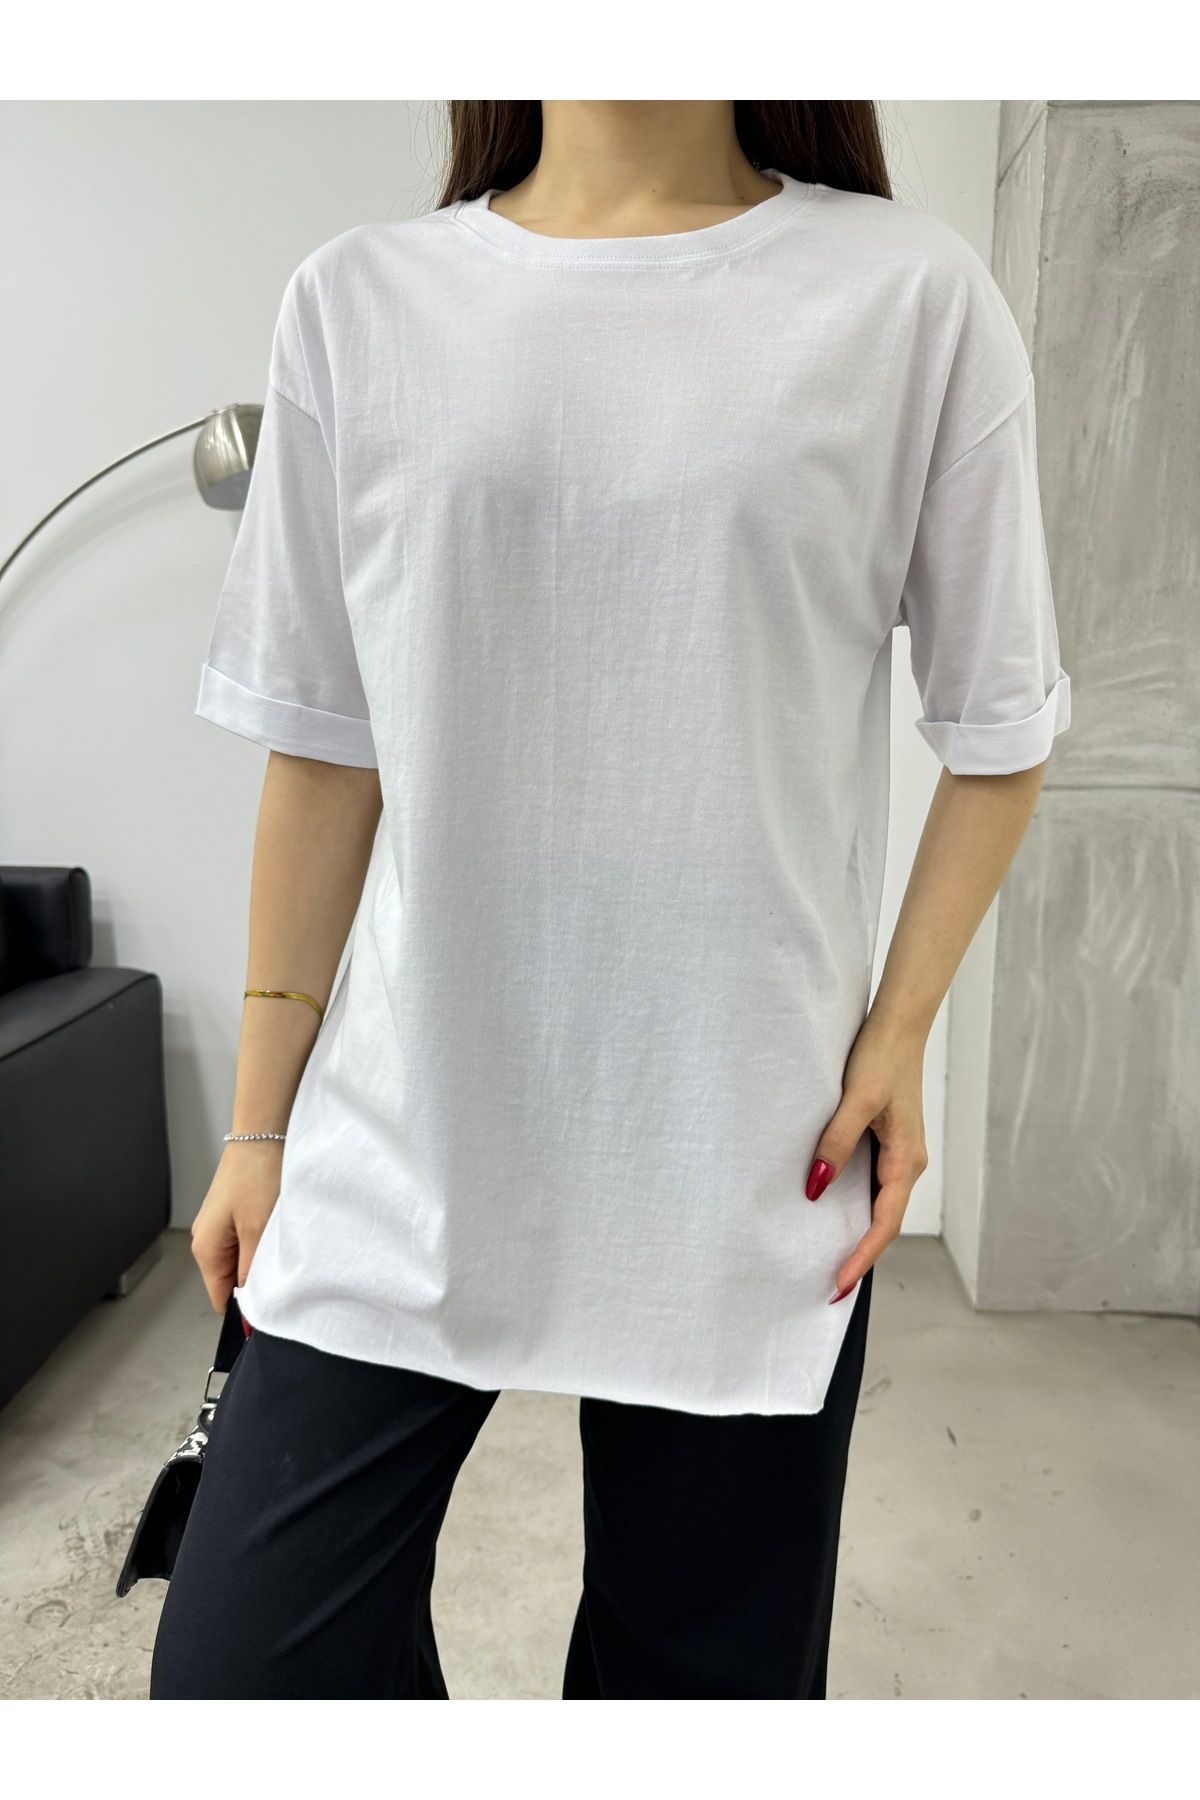 BİKELİFE Kadın Oversize Lazer Kesim Yan Yırtmaçlı T-shirt